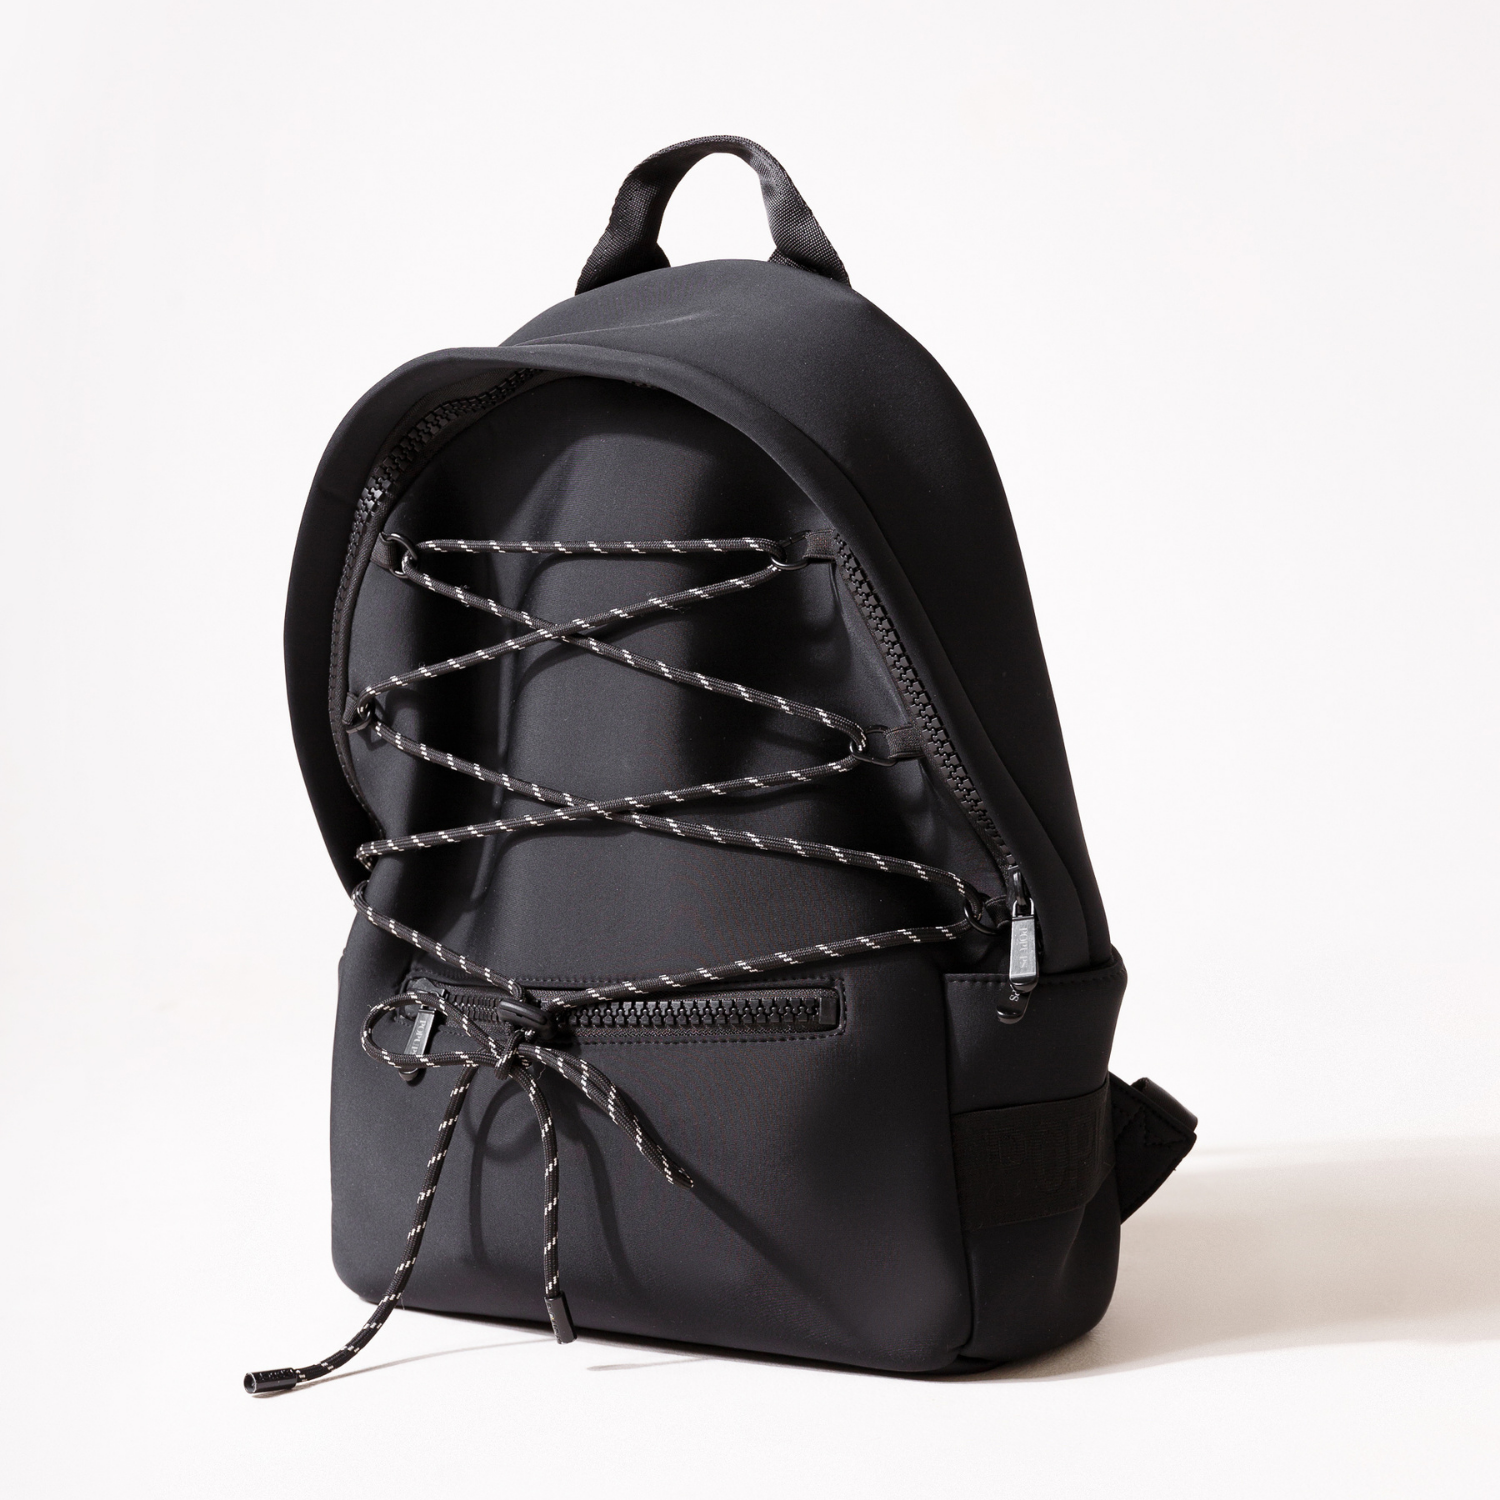 How do I wash my mini backpack? I think it's made of neoprene : r